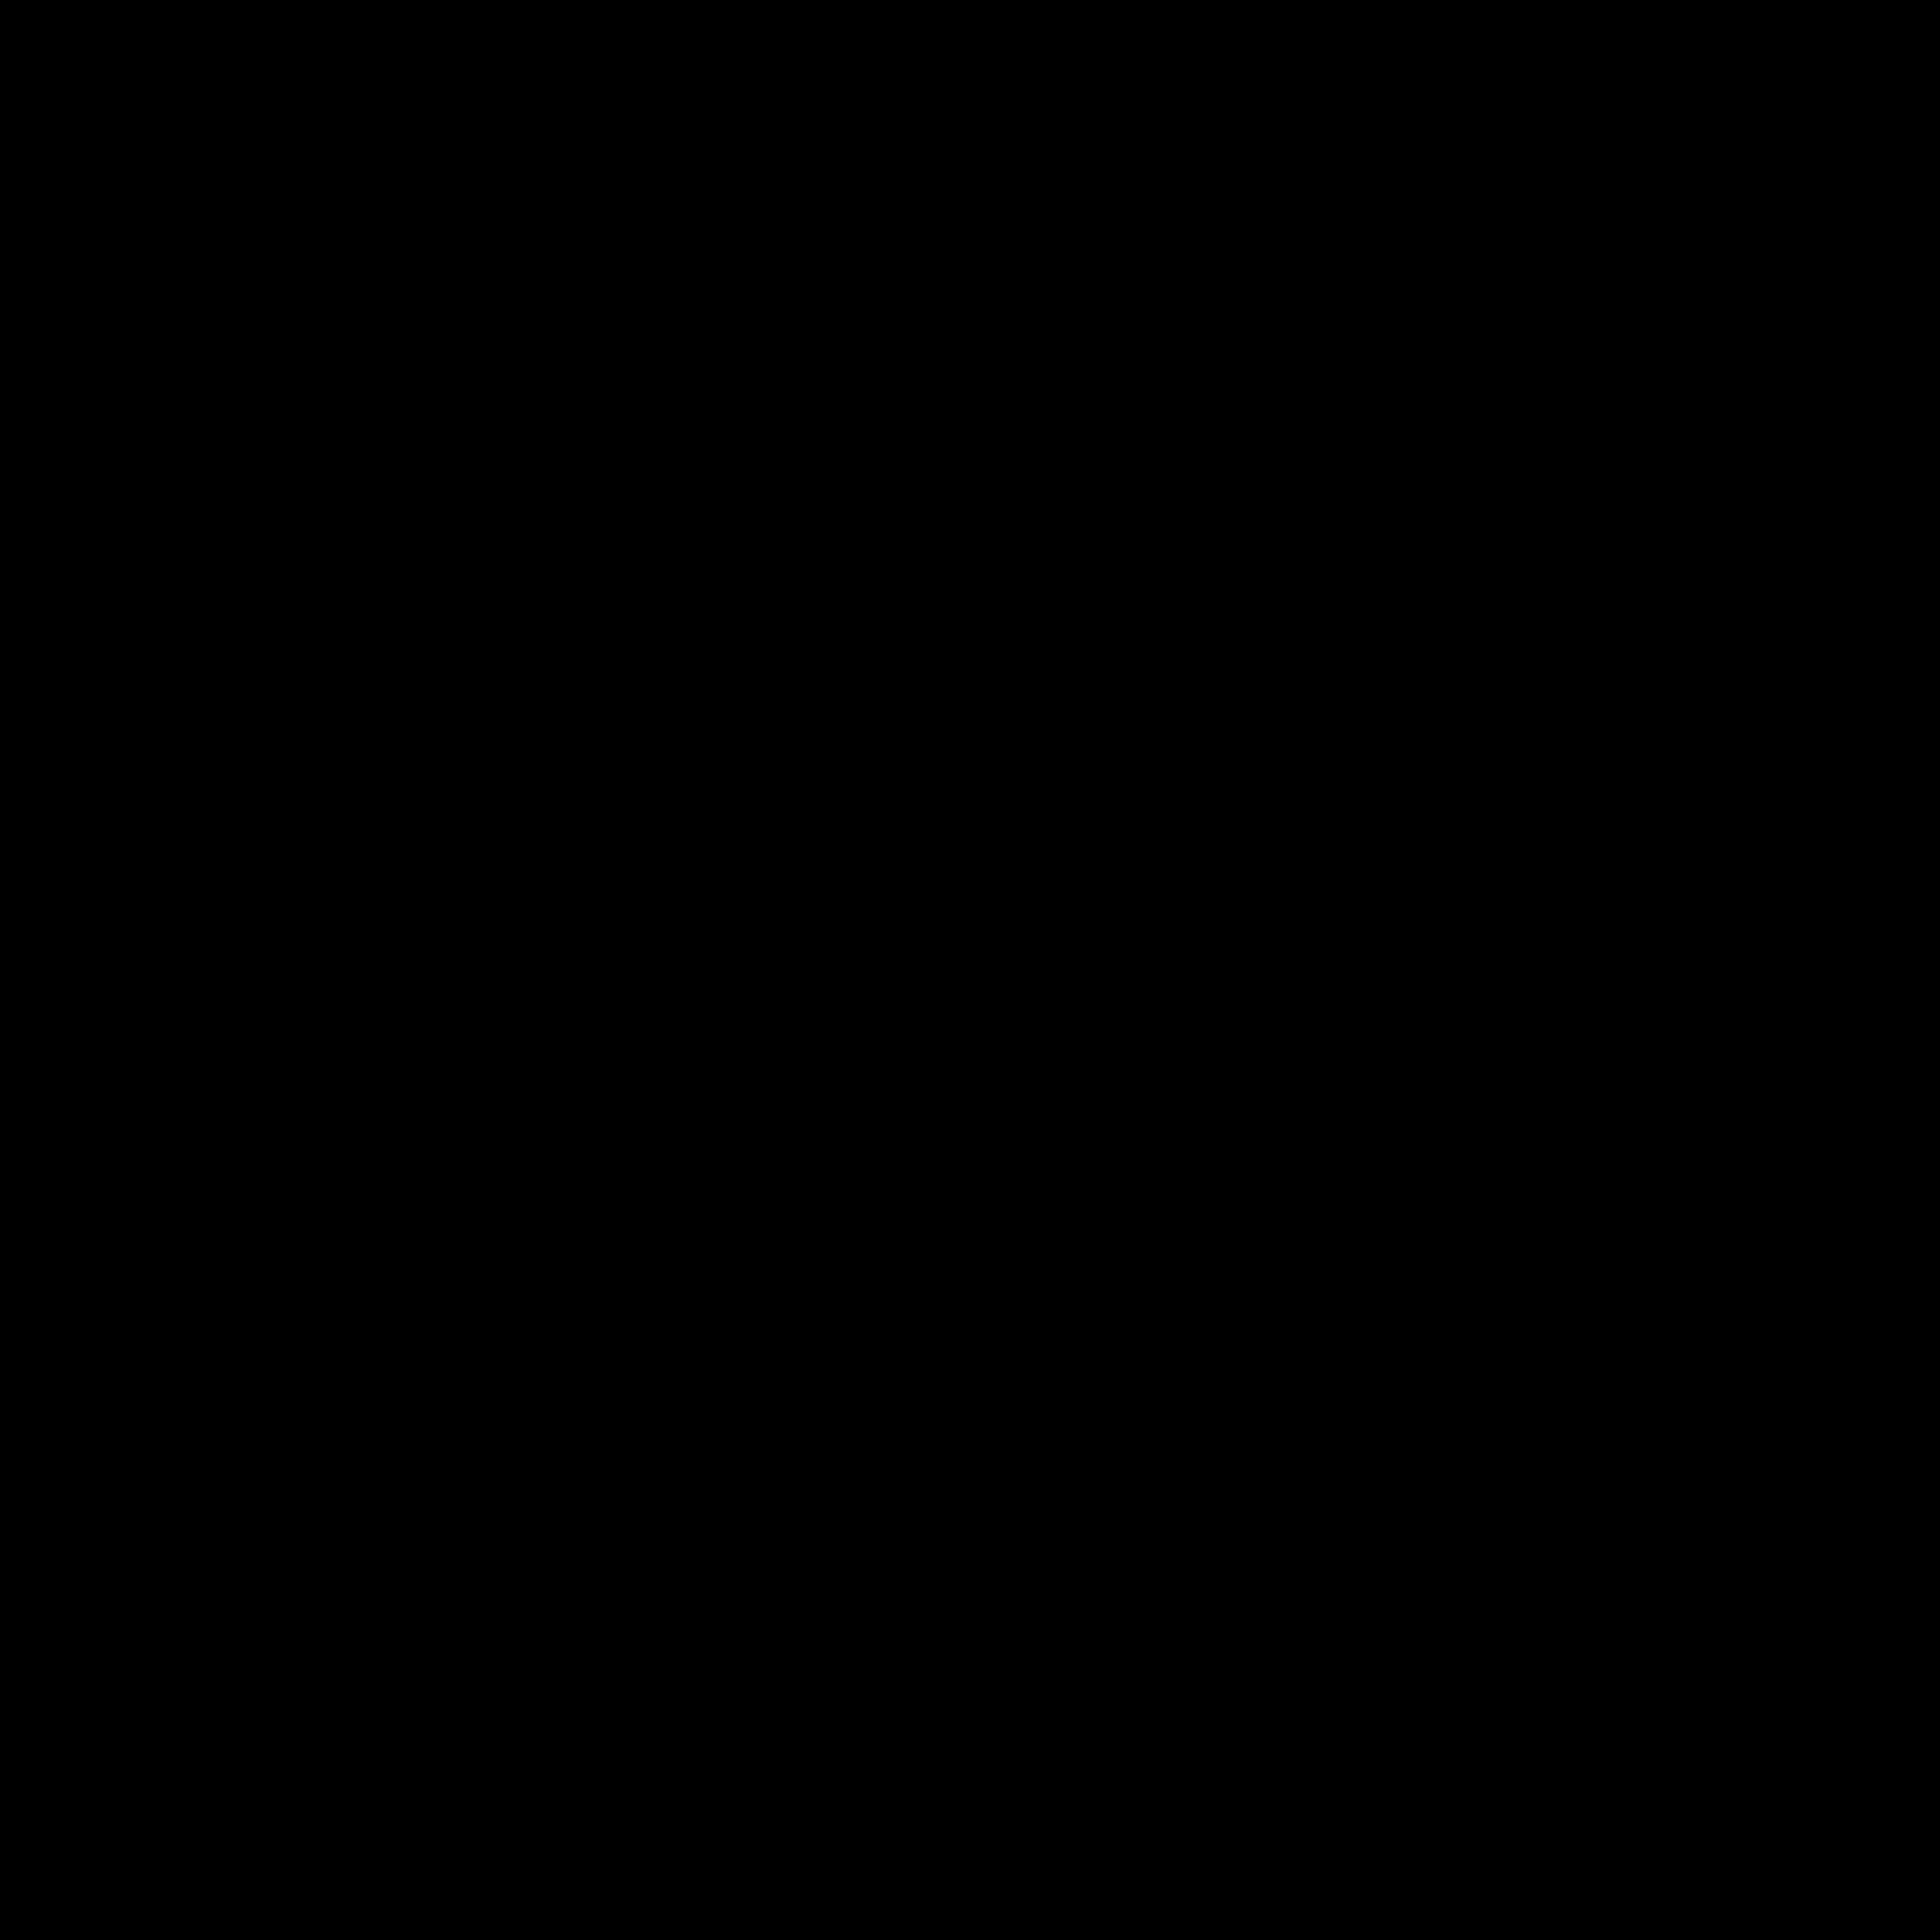 Gaabh logo animation